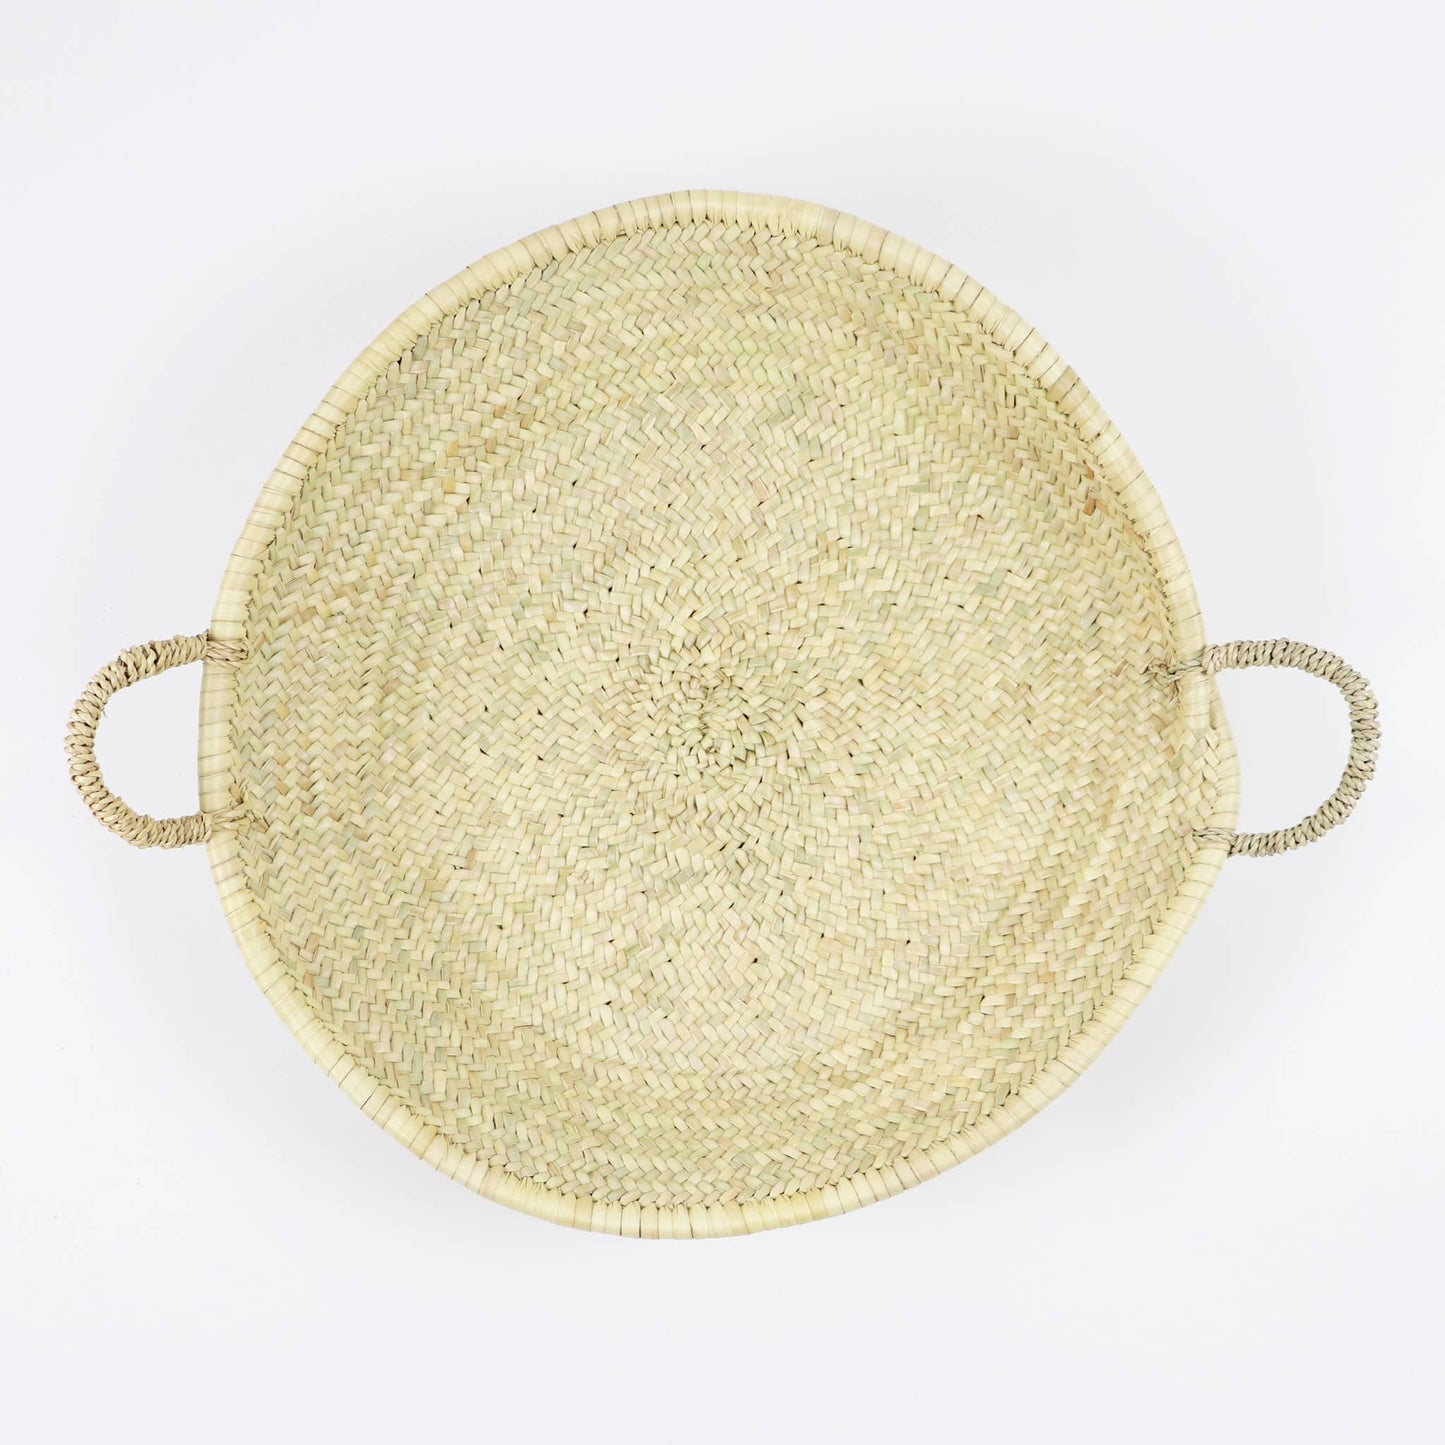 SOCCO Designs - Moroccan Straw Woven Plate: Medium